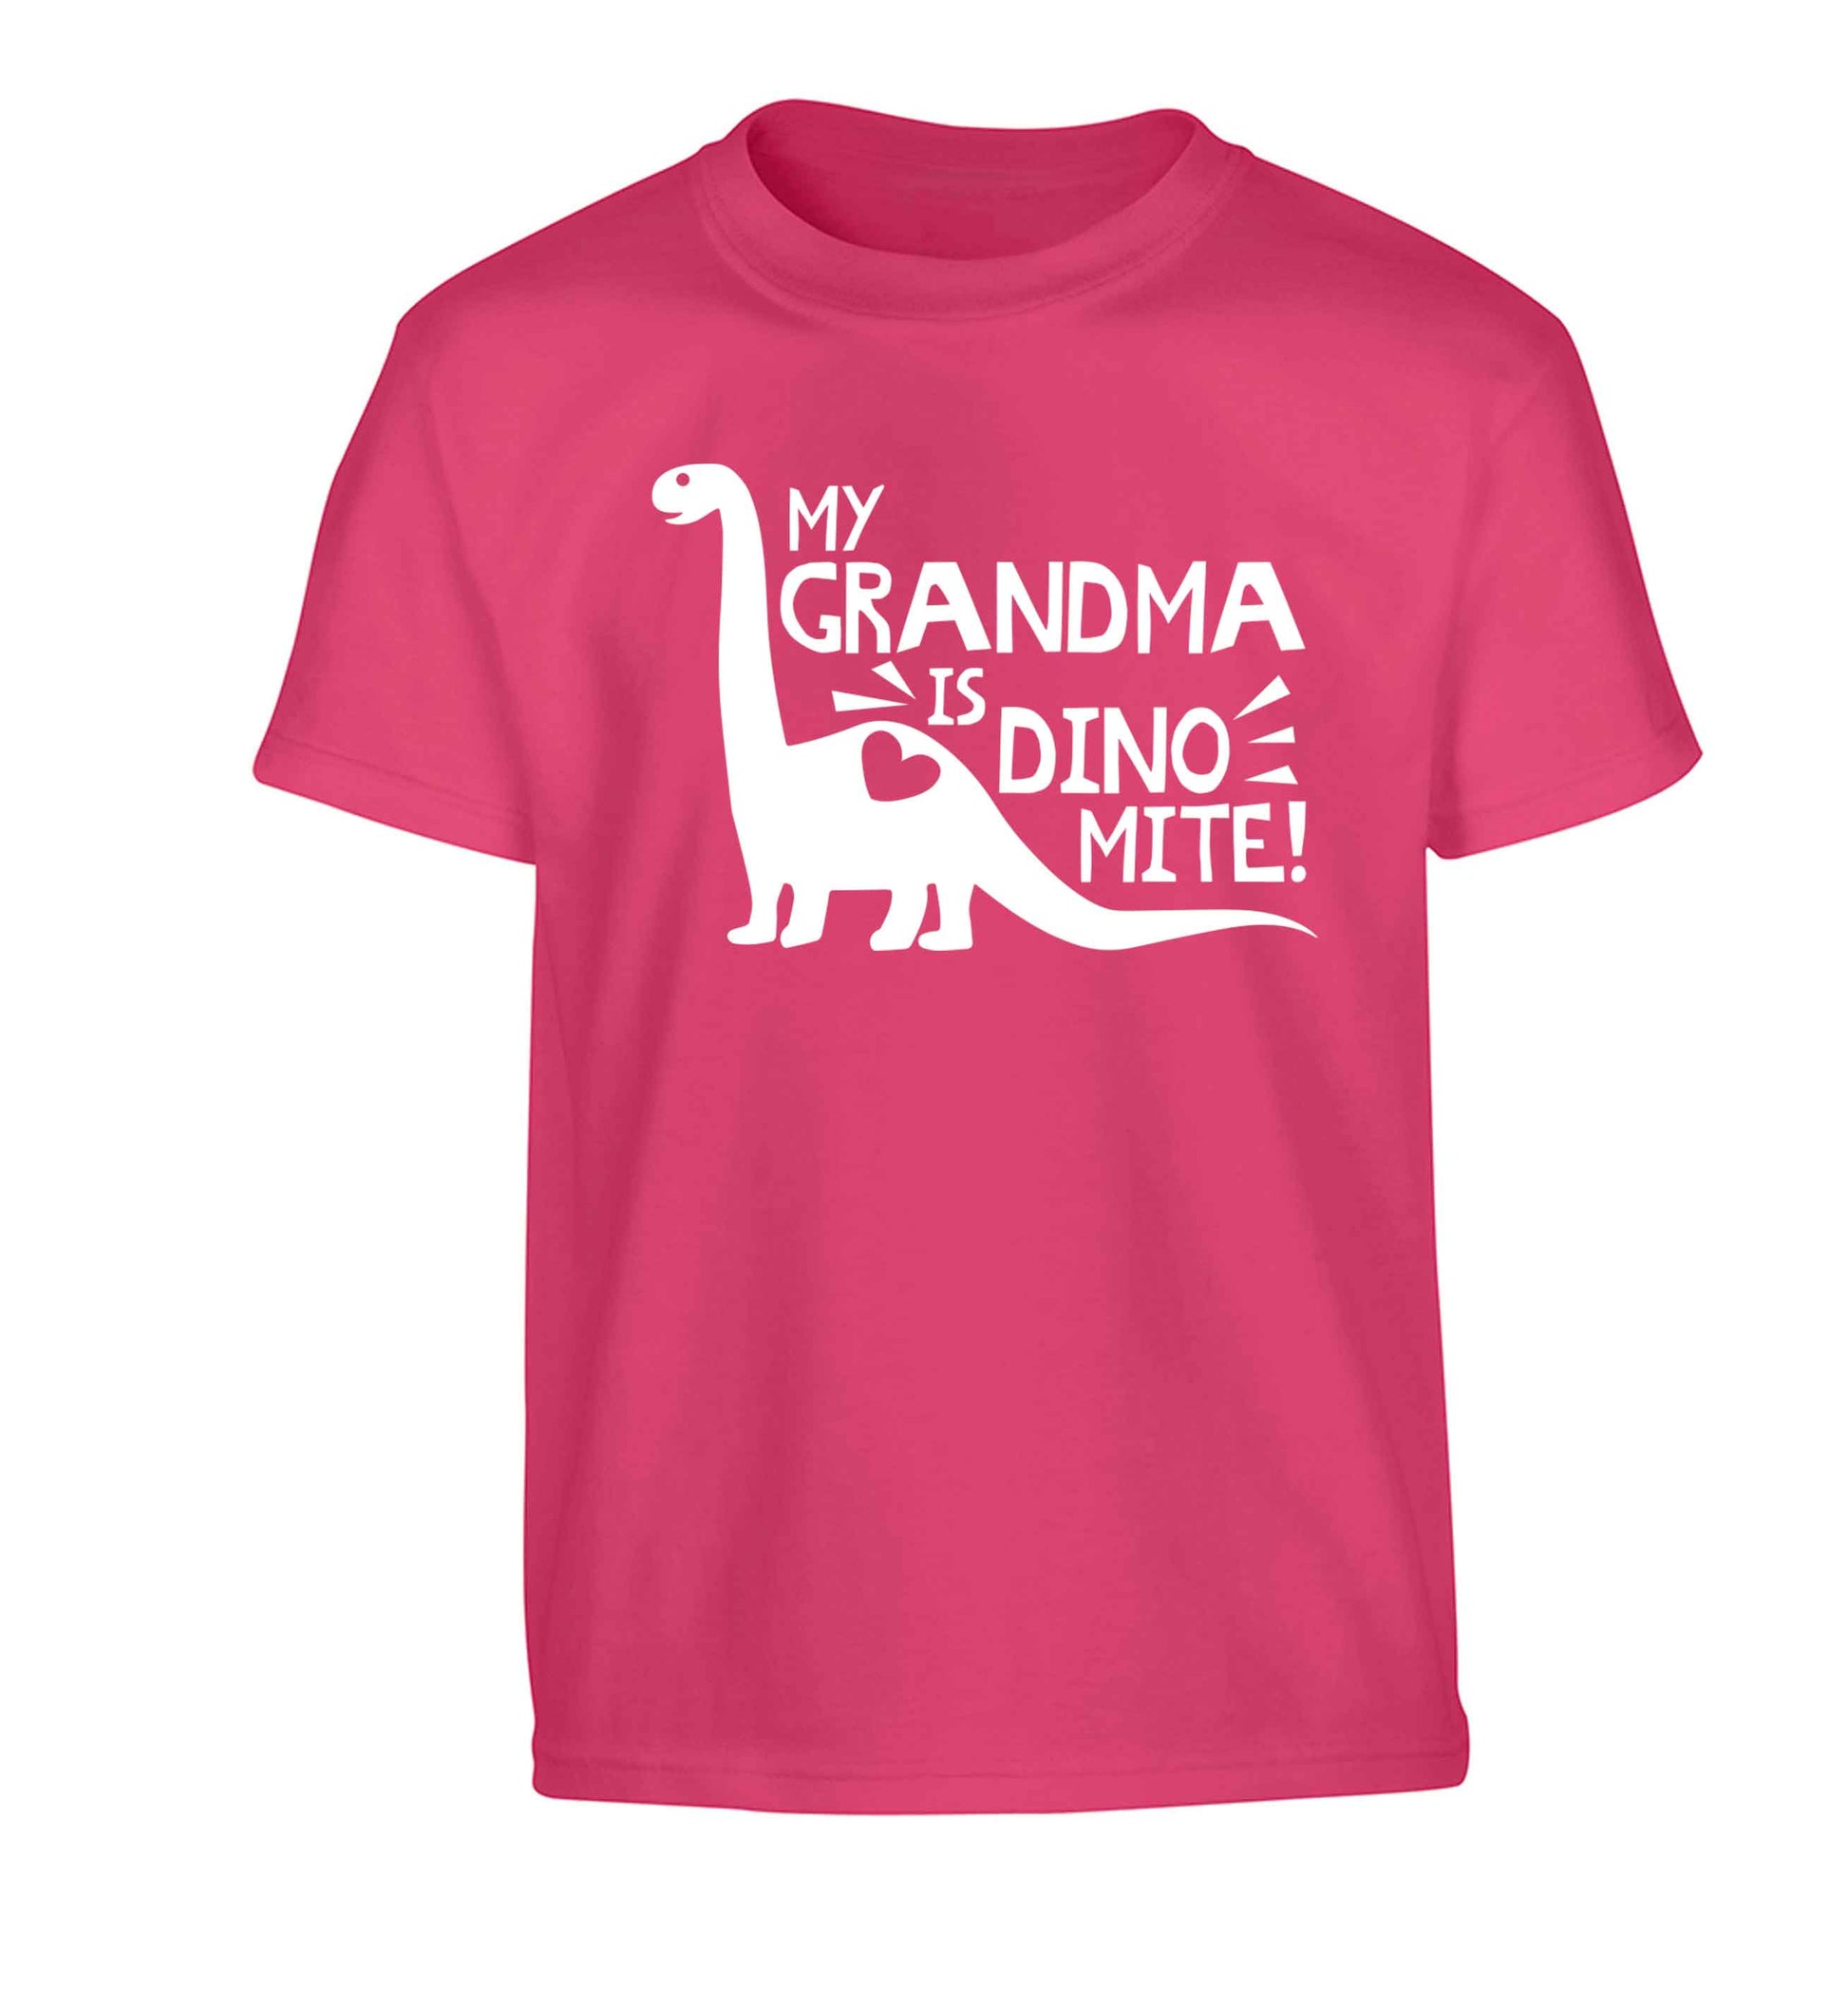 My grandma is dinomite! Children's pink Tshirt 12-13 Years